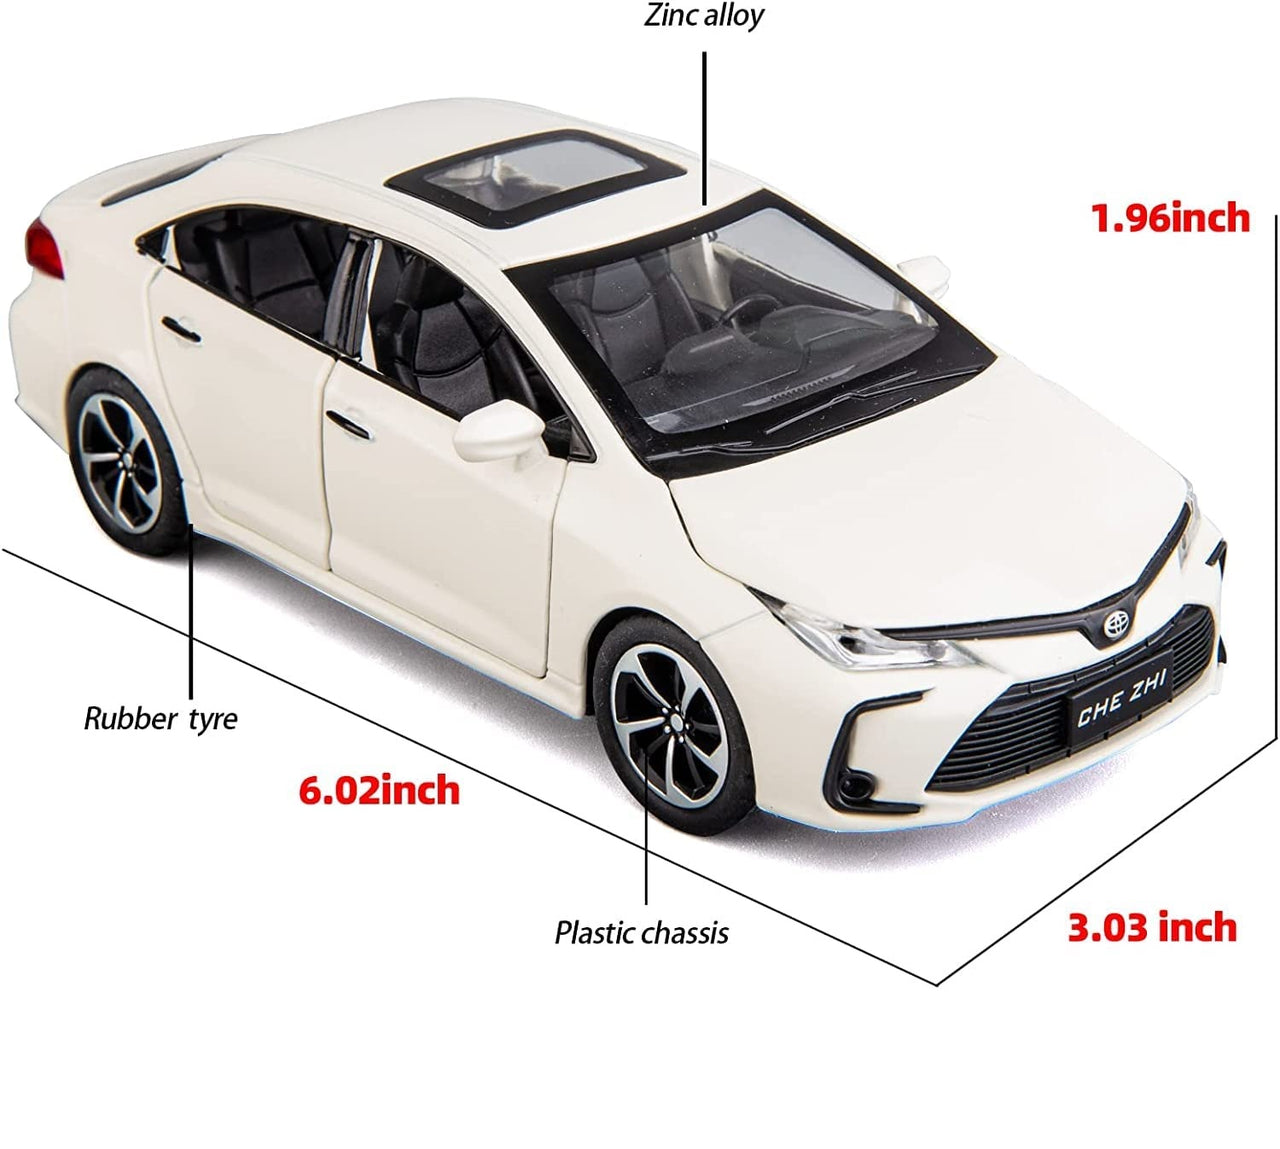 1:32 Diecast Toyota Corolla Hybrid Model Car